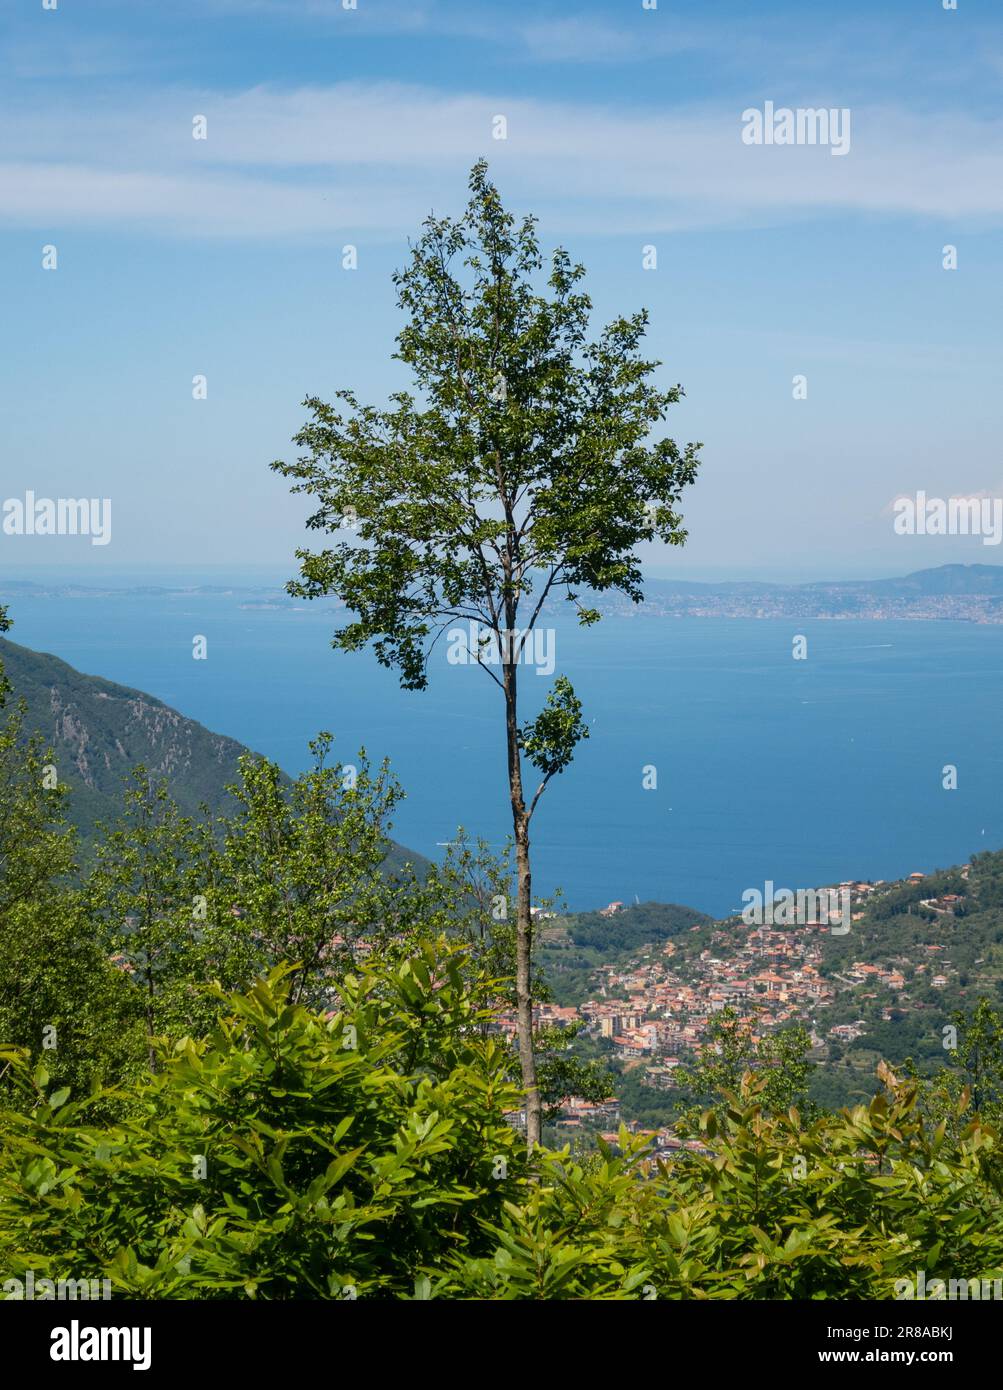 Vue sur les collines autour de San Lazzaro au-dessus d'Amalfi, Salerne dans la région de Campanie, Italie Banque D'Images